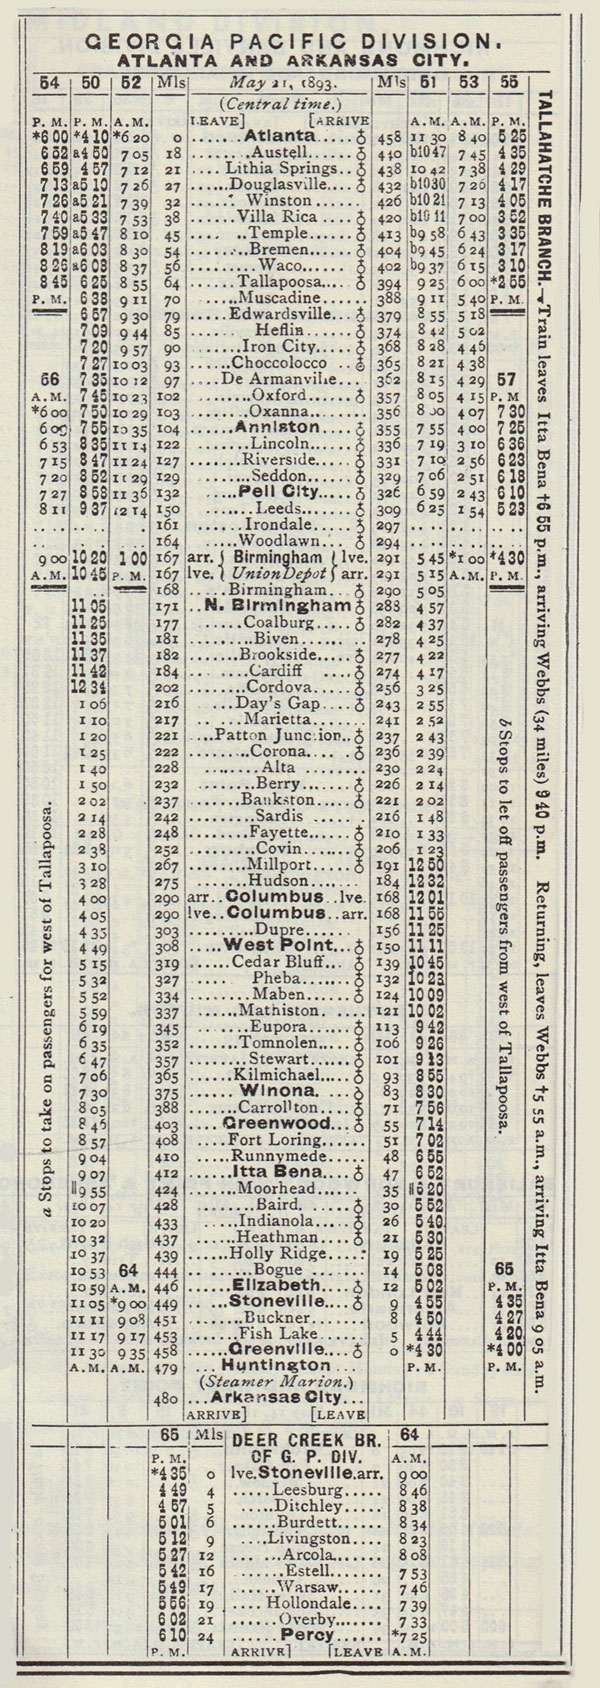 gp_timetable1893